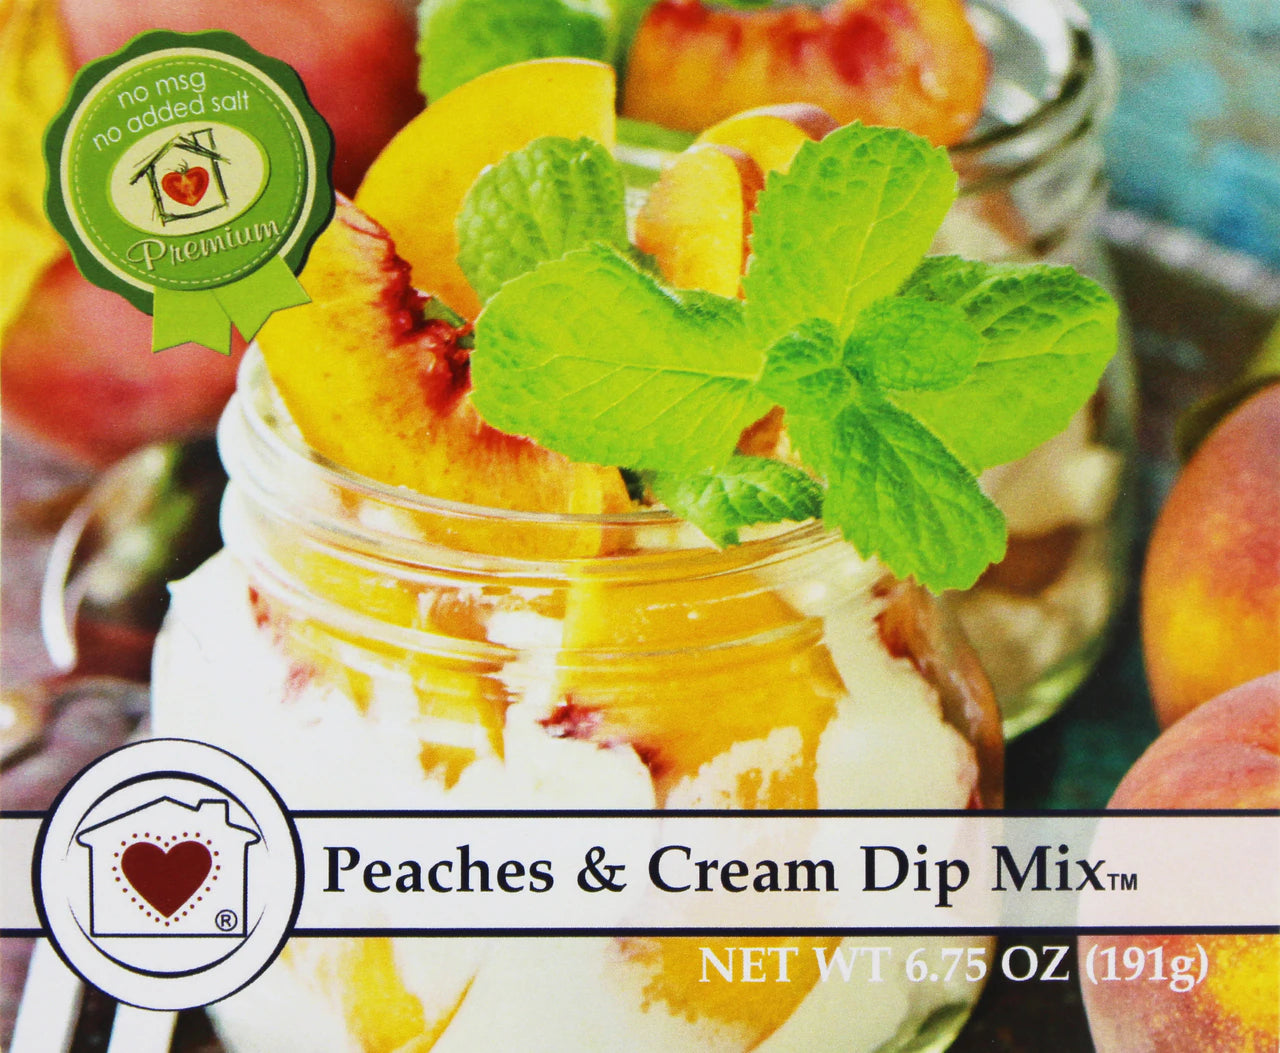 Peaches & Cream Dip Mix